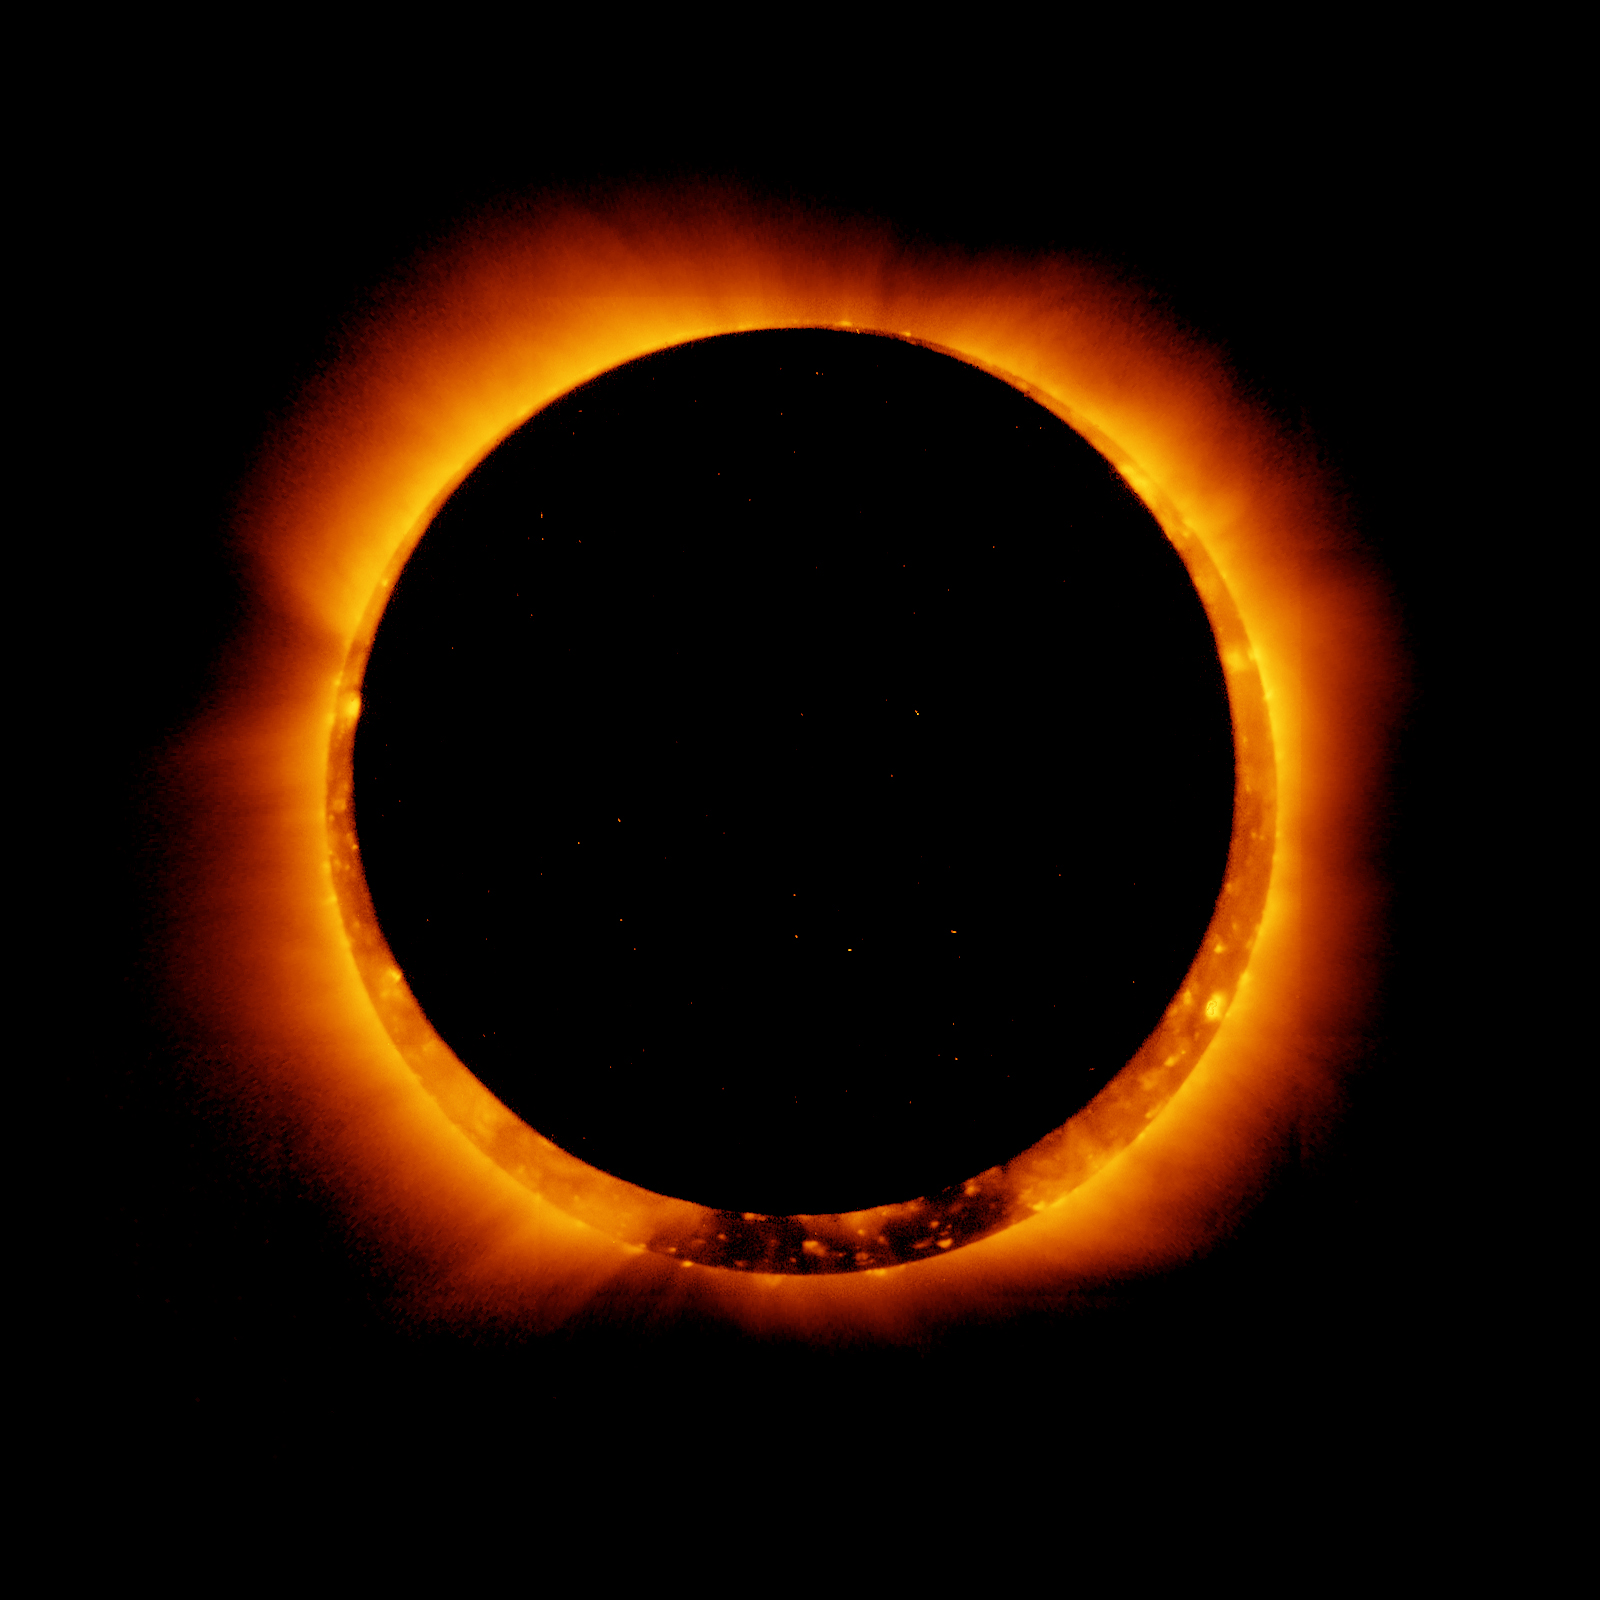 Feb. 26 - Annular Eclipse of the Sun